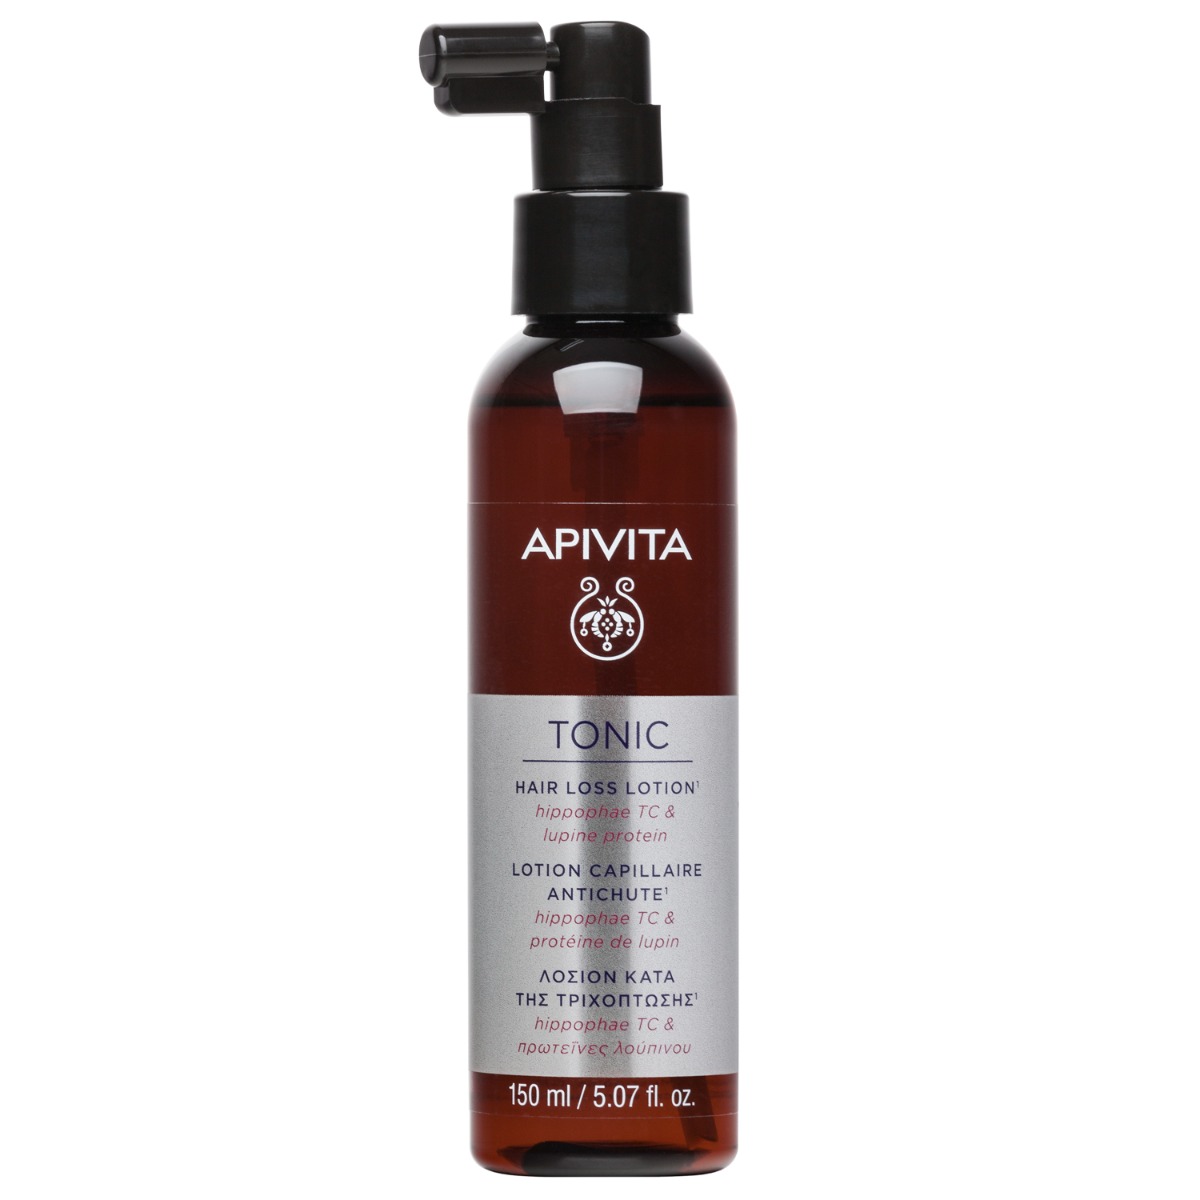 APIVITA Tonic Hair Loss Lotion, 150ml